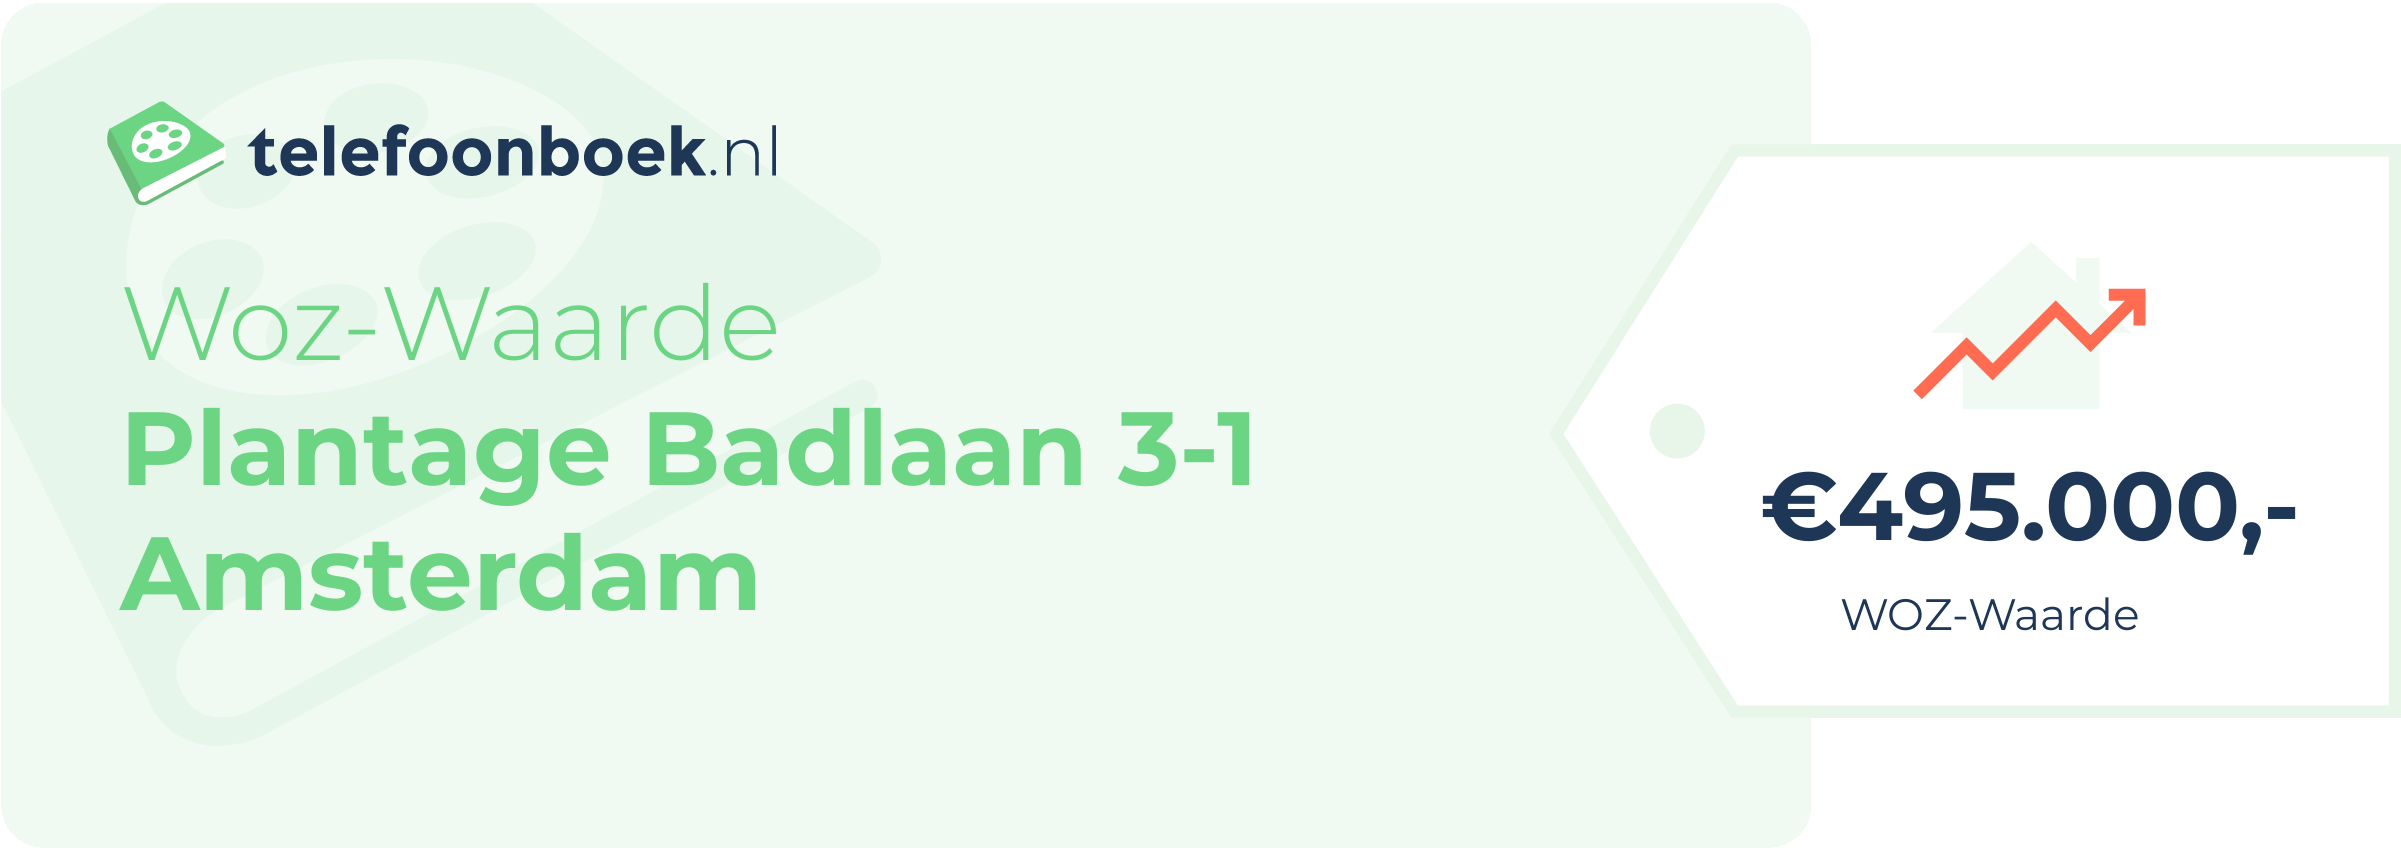 WOZ-waarde Plantage Badlaan 3-1 Amsterdam